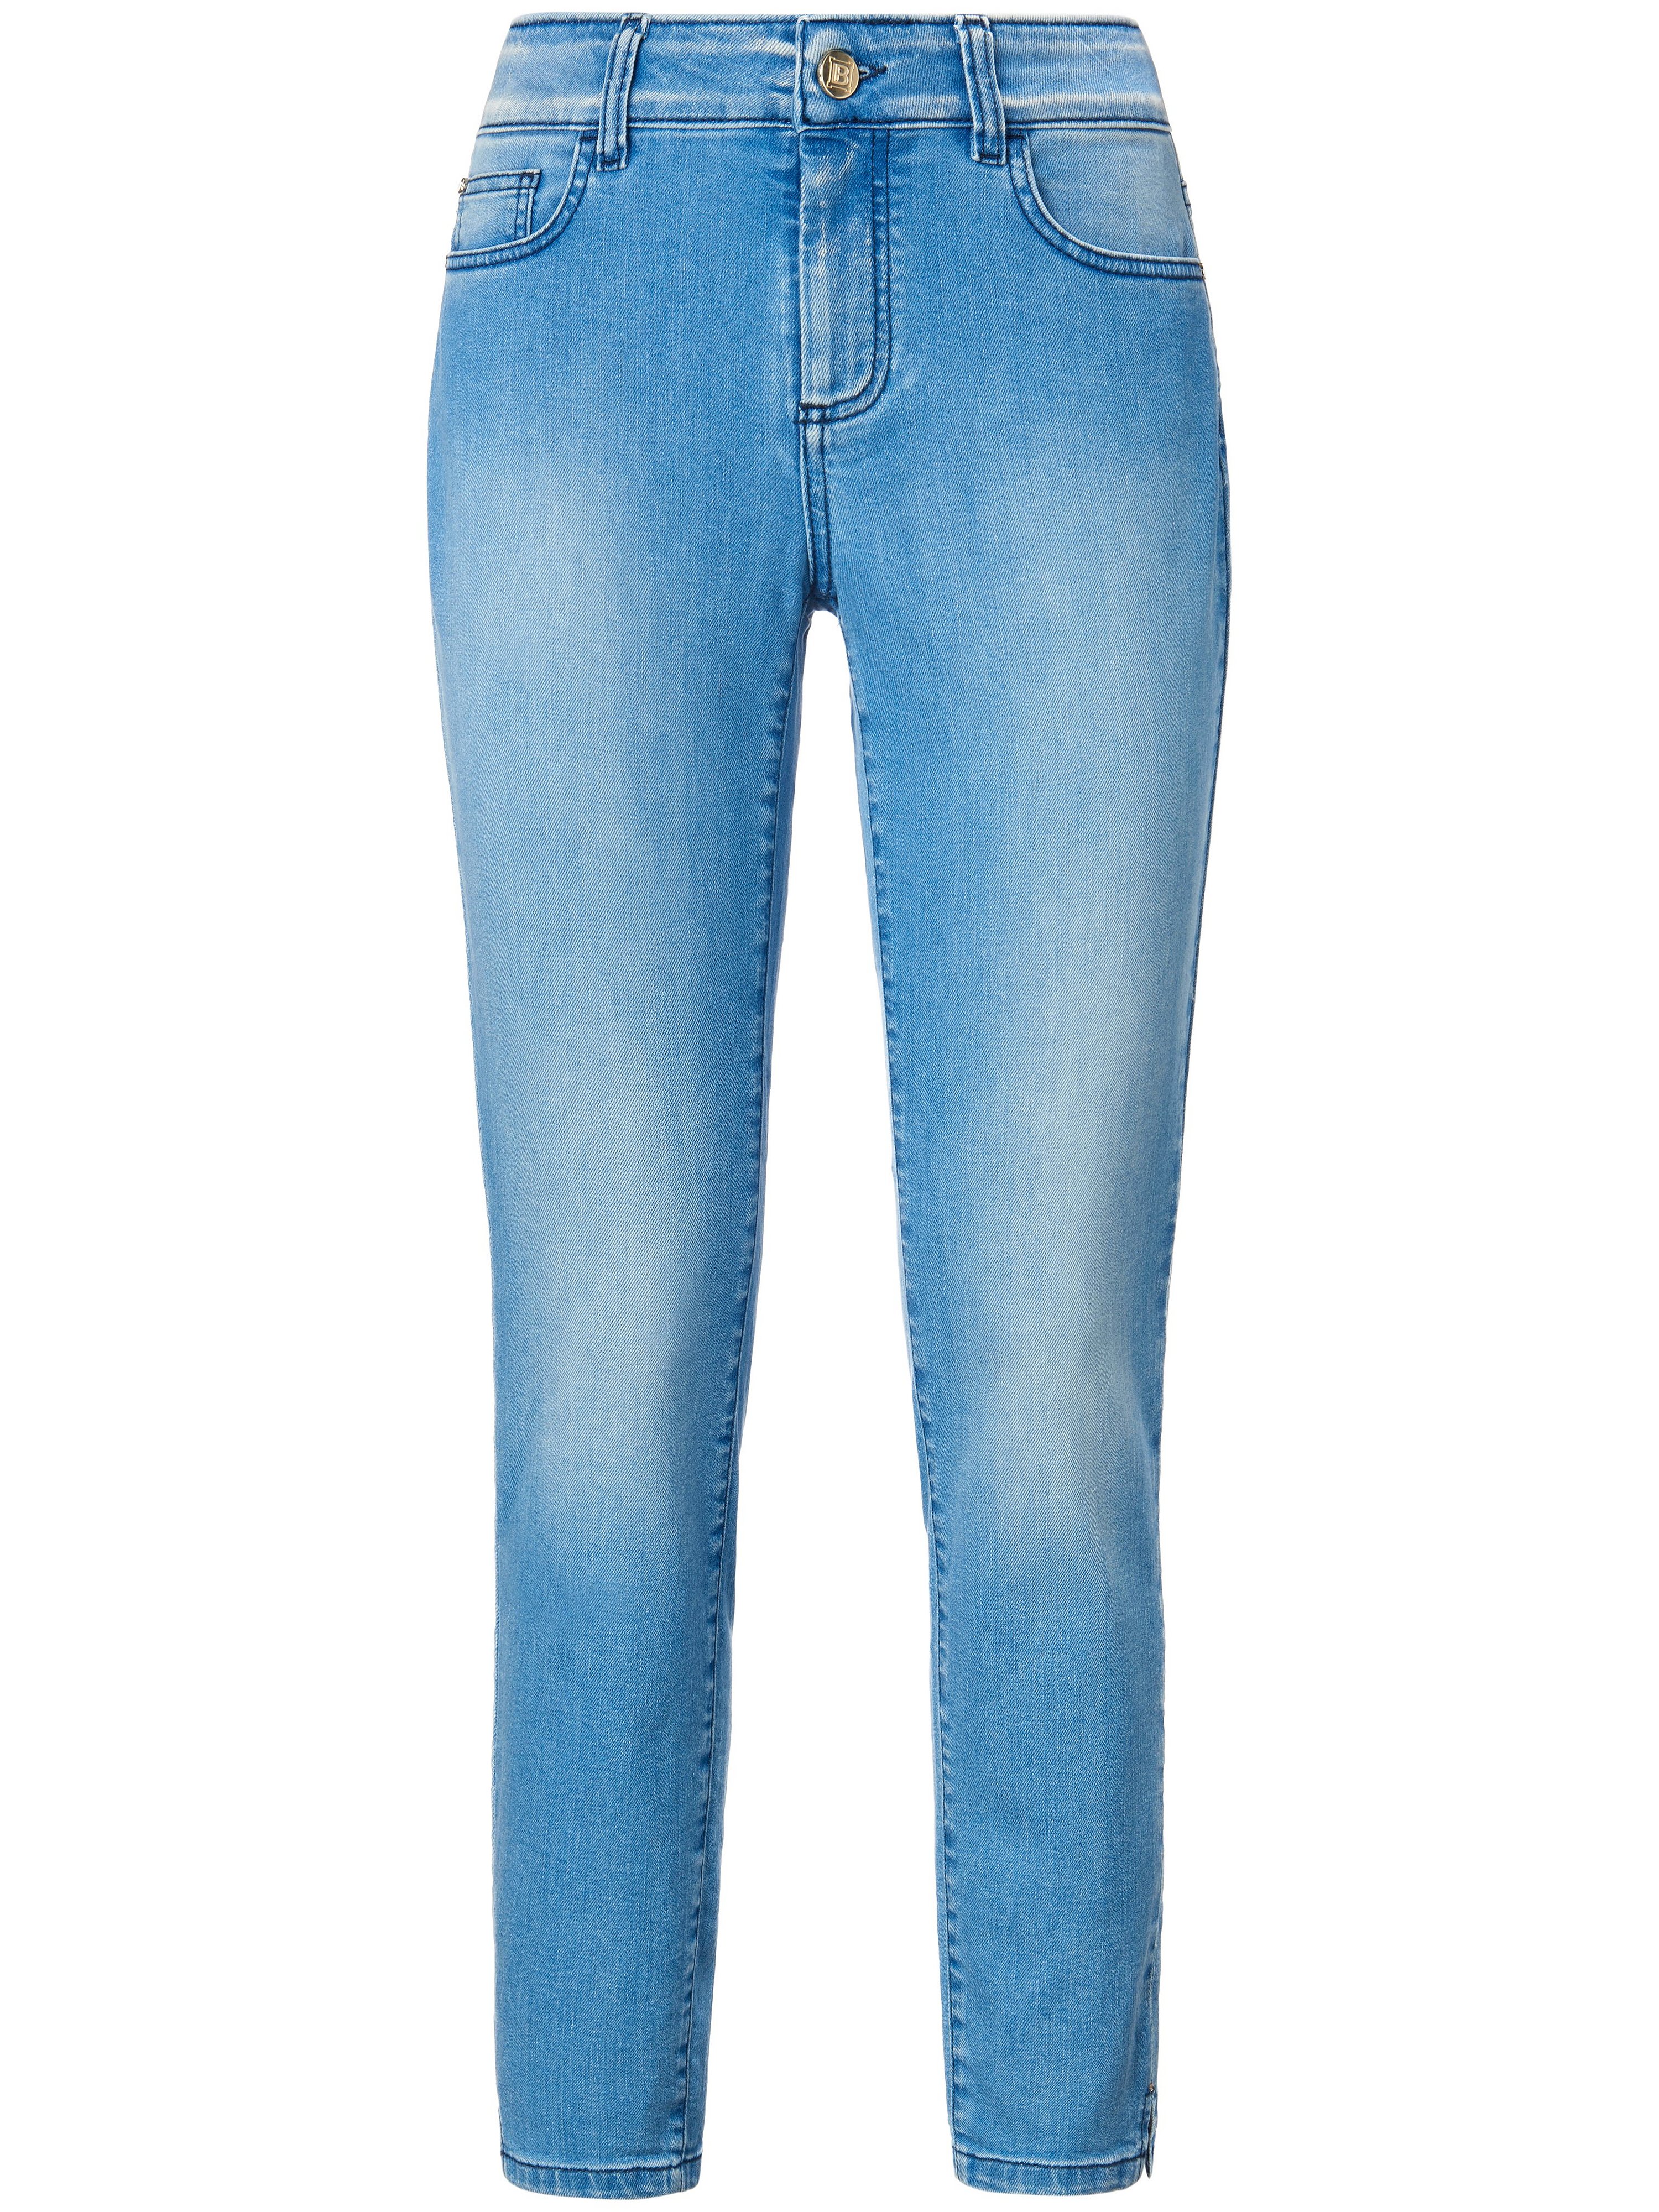 7/8-skinny-jeans in 5-pocketsmodel Van Laura Biagiotti Roma denim